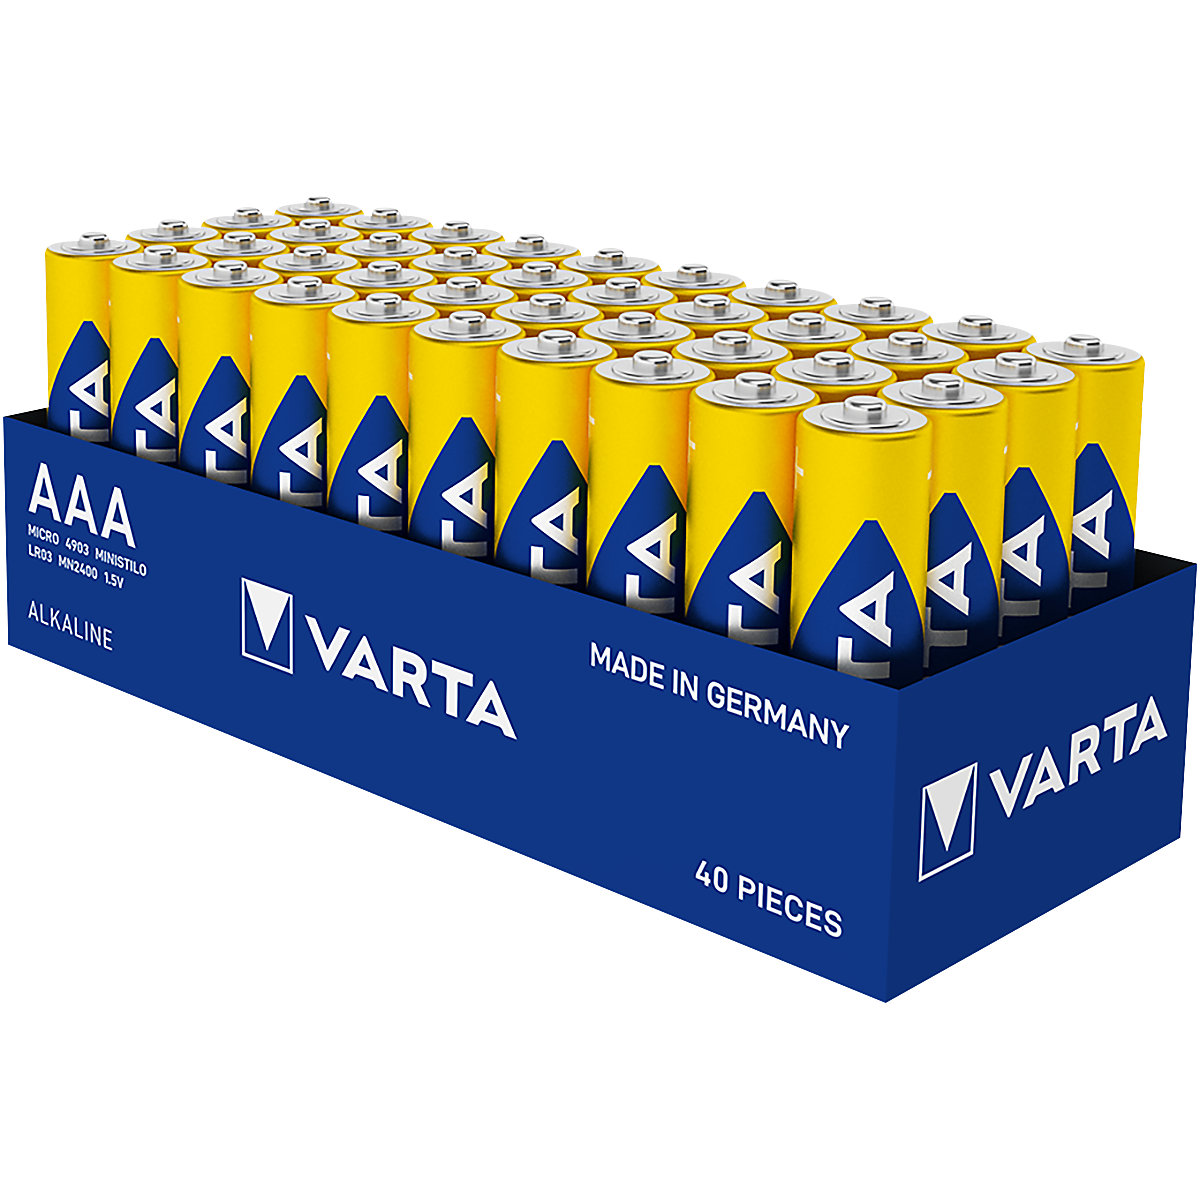 Bateria LONGLIFE Power - VARTA